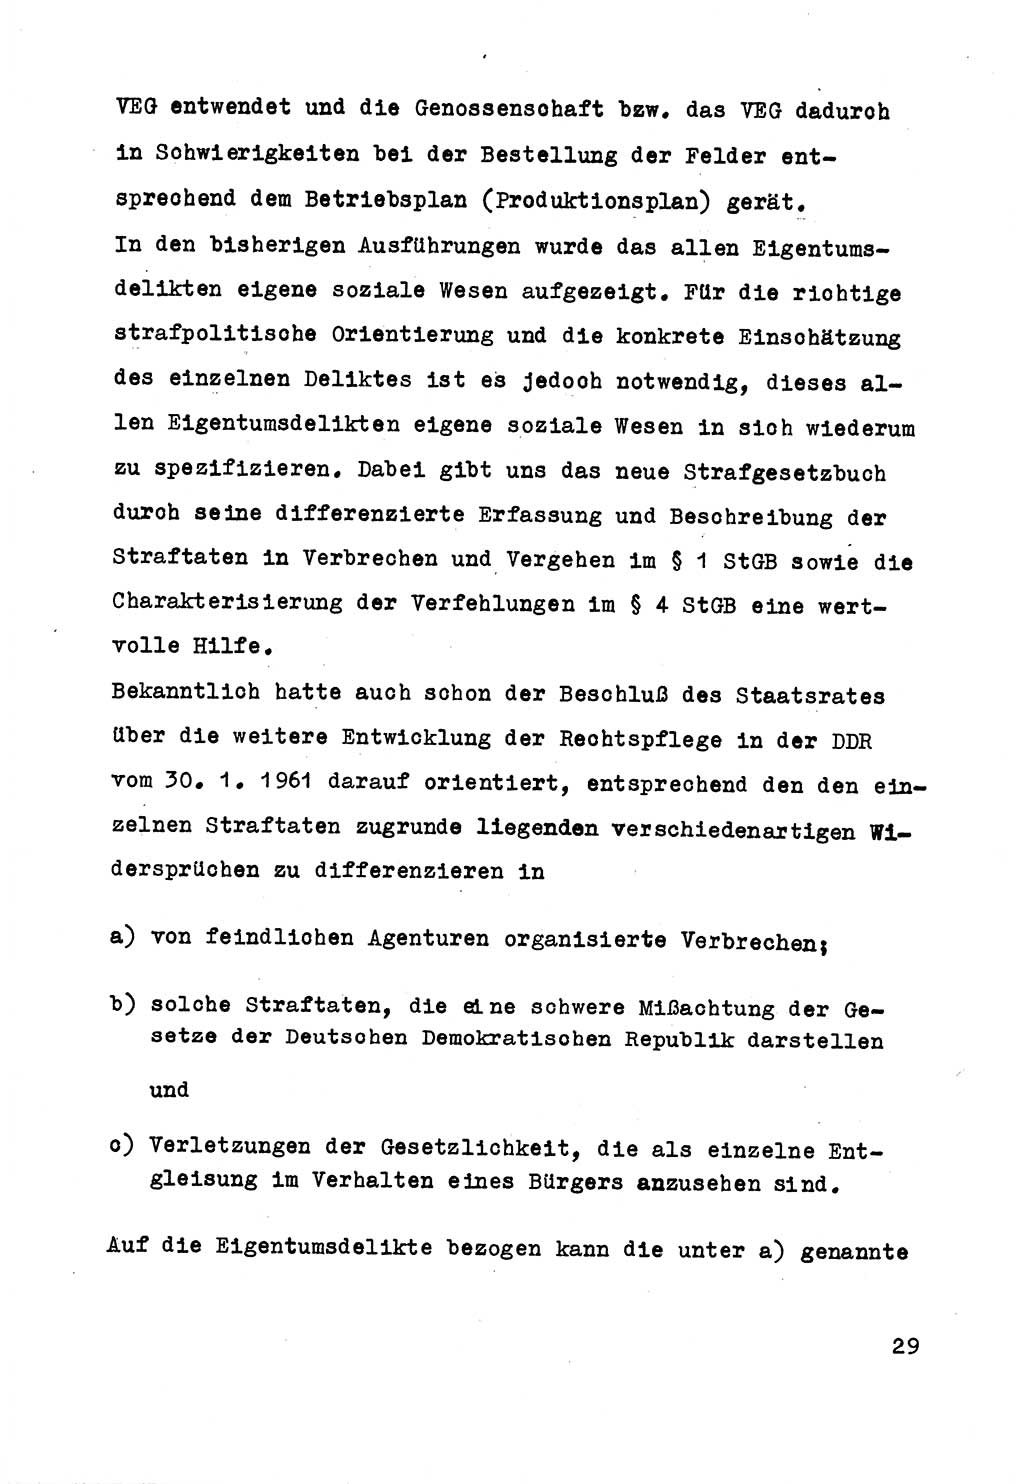 Strafrecht der DDR (Deutsche Demokratische Republik), Besonderer Teil, Lehrmaterial, Heft 5 1970, Seite 29 (Strafr. DDR BT Lehrmat. H. 5 1970, S. 29)